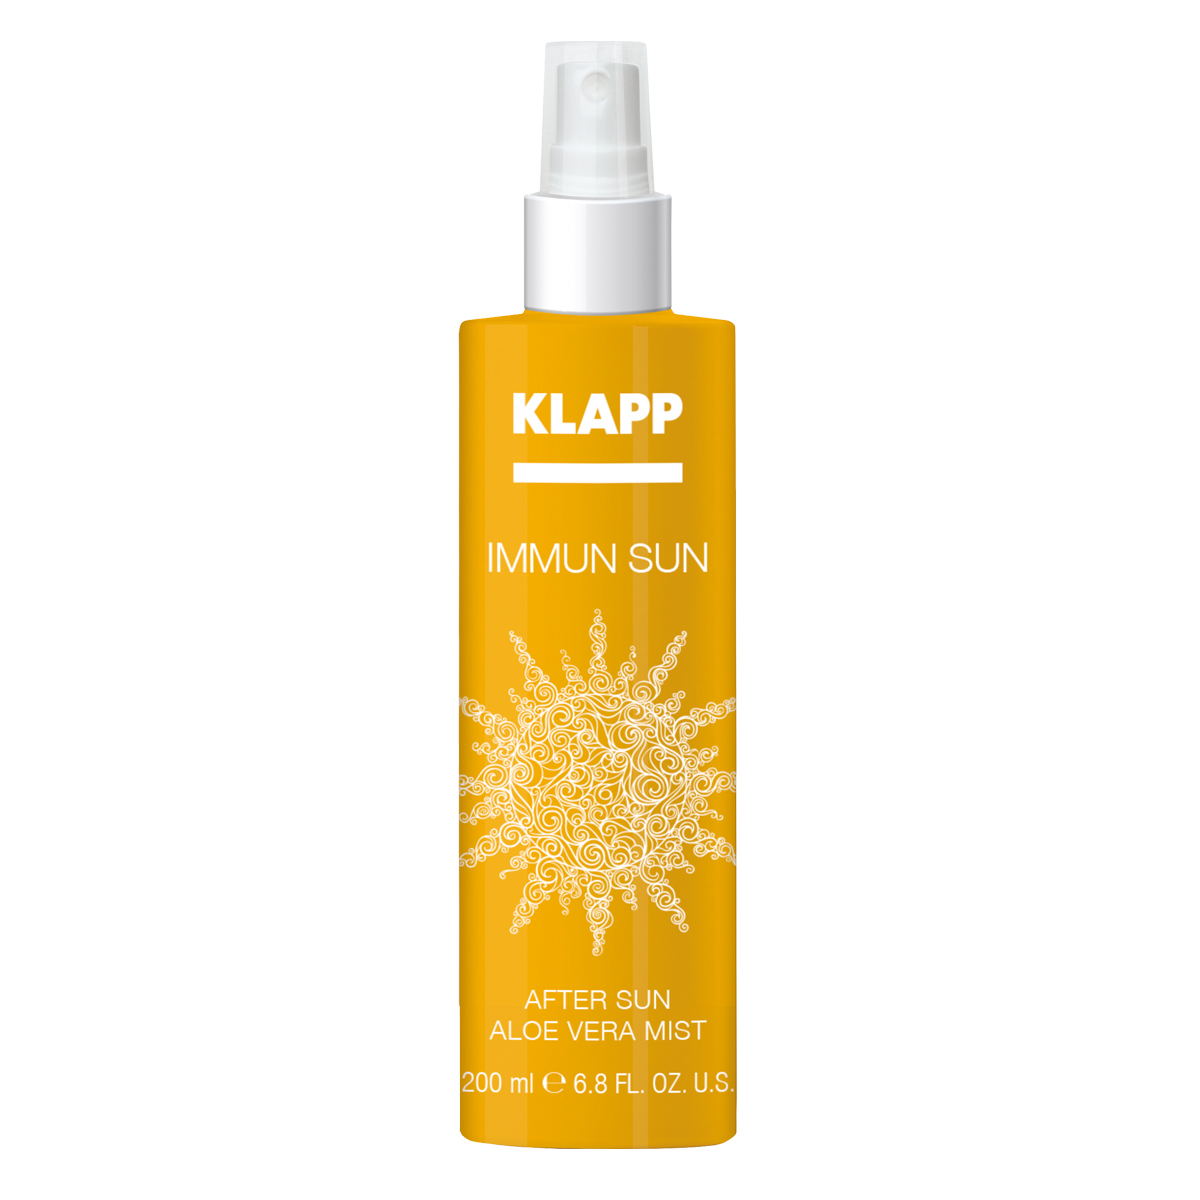 KLAPP Immun Sun After Sun Aloe Vera Mist 200 ml